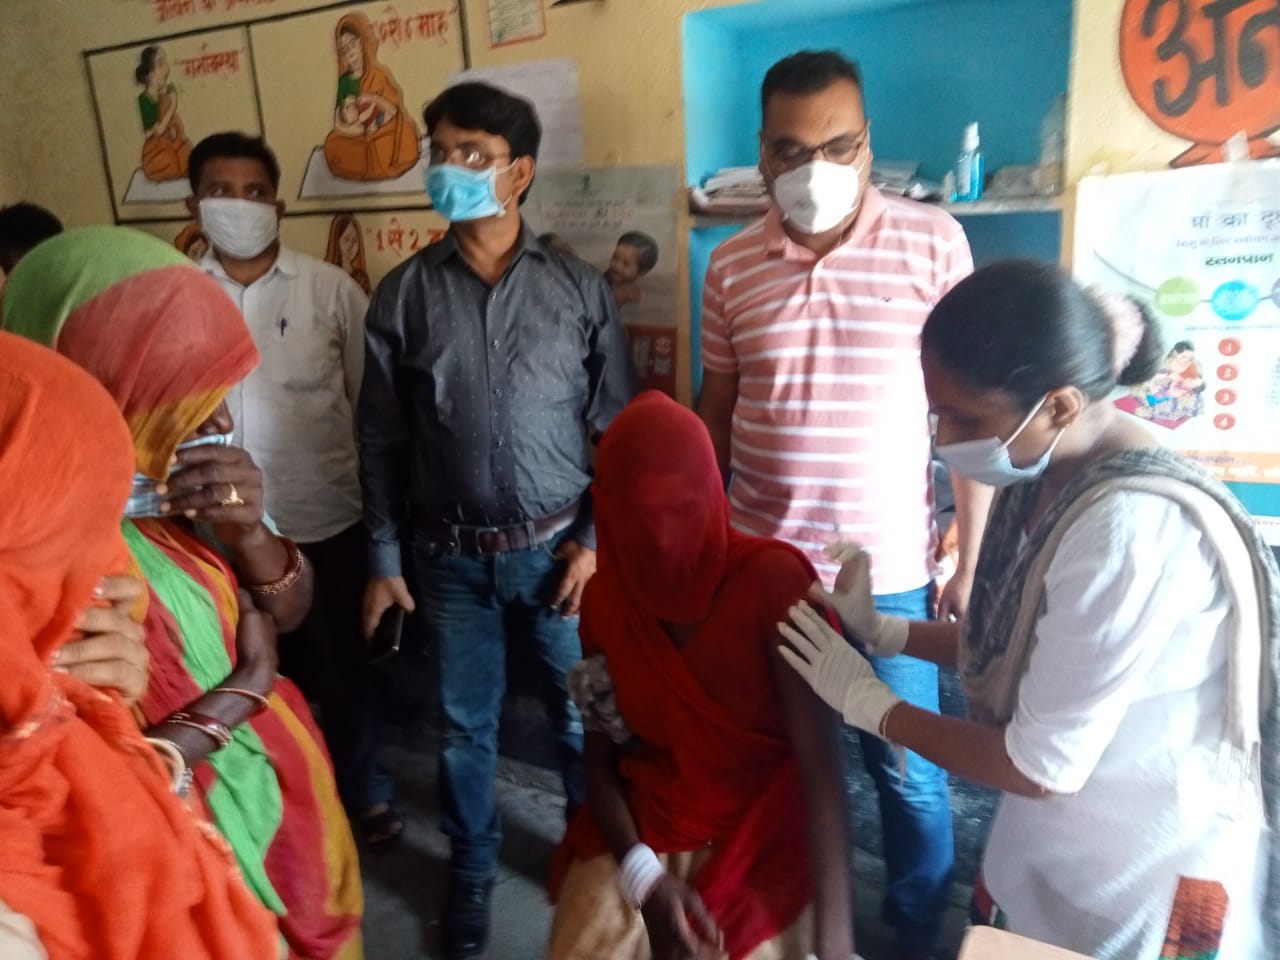 आंगनवाड़ी केन्द्र पर आयोजित कोविड टीकाकरण सत्र का किया औचक निरीक्षण